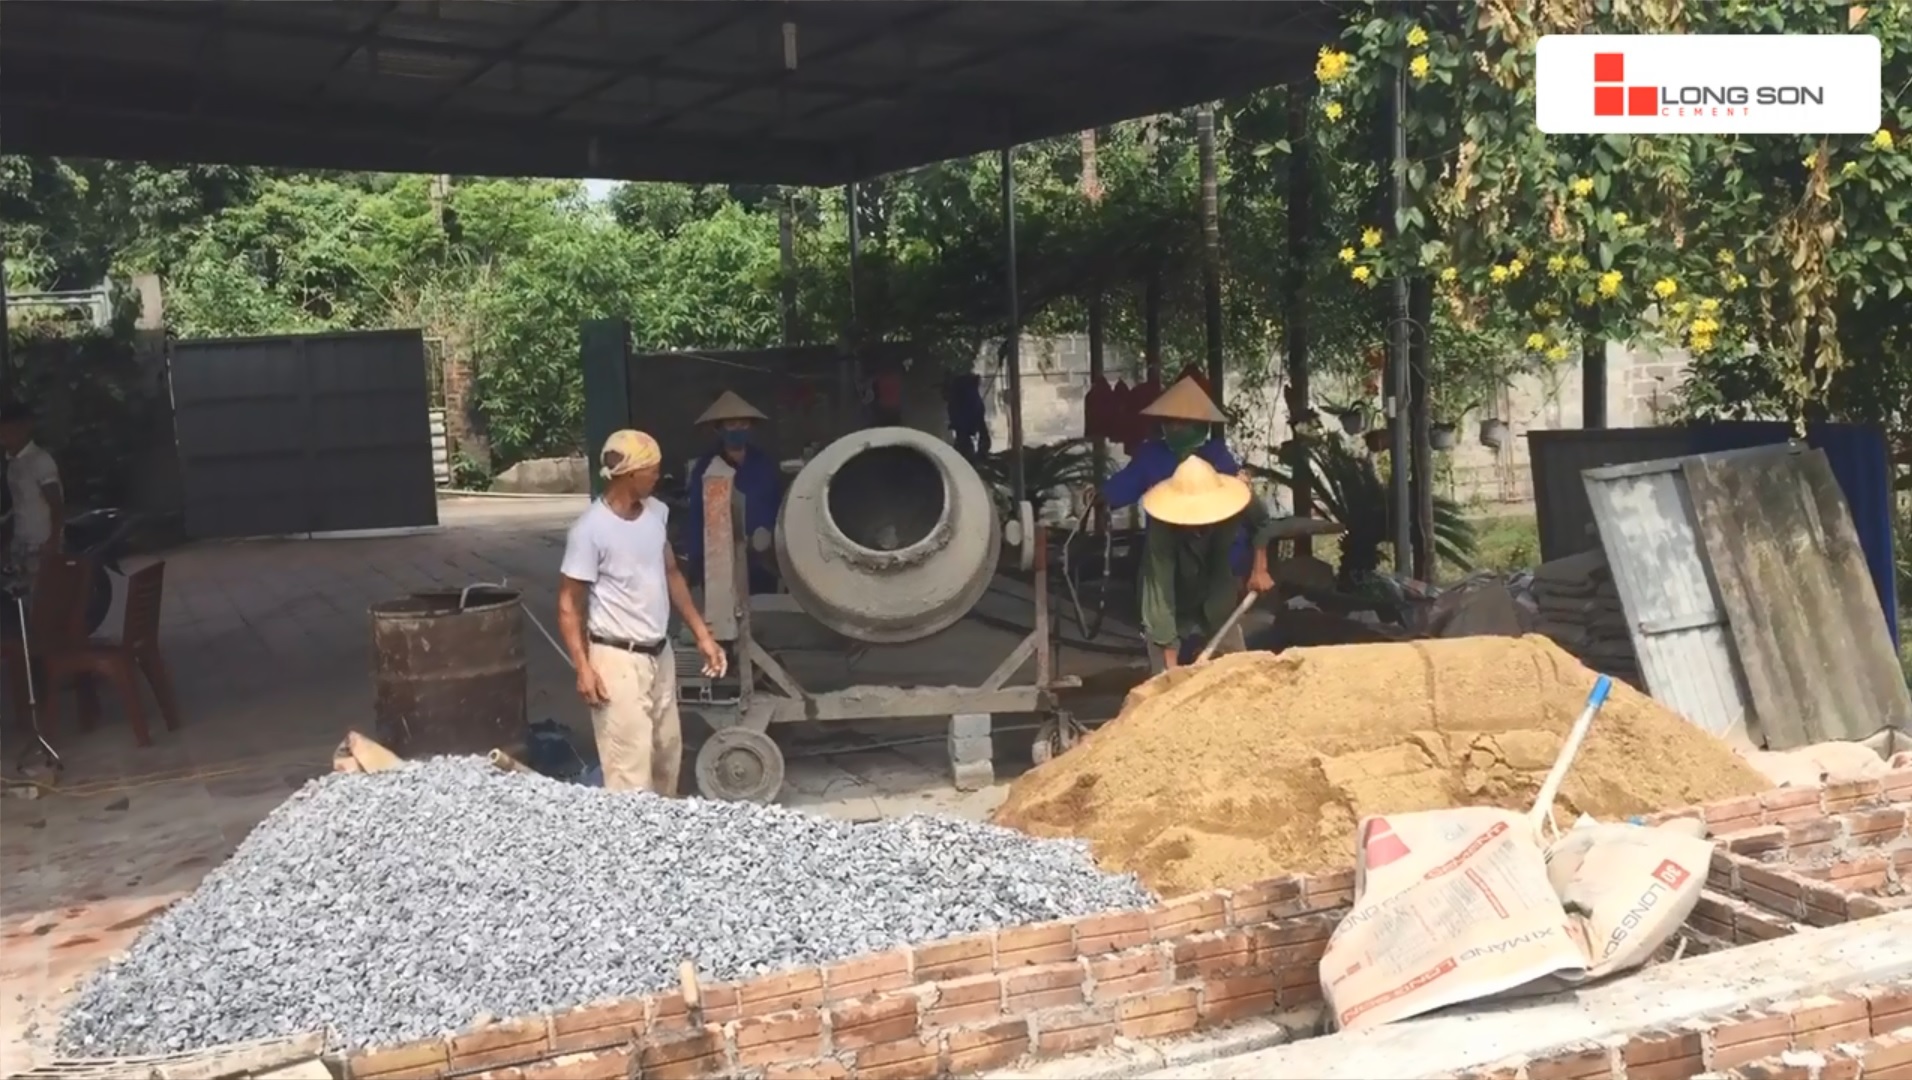 Phóng sự công trình sử dụng Xi măng Long Sơn tại Thái Nguyên 15.06.2019